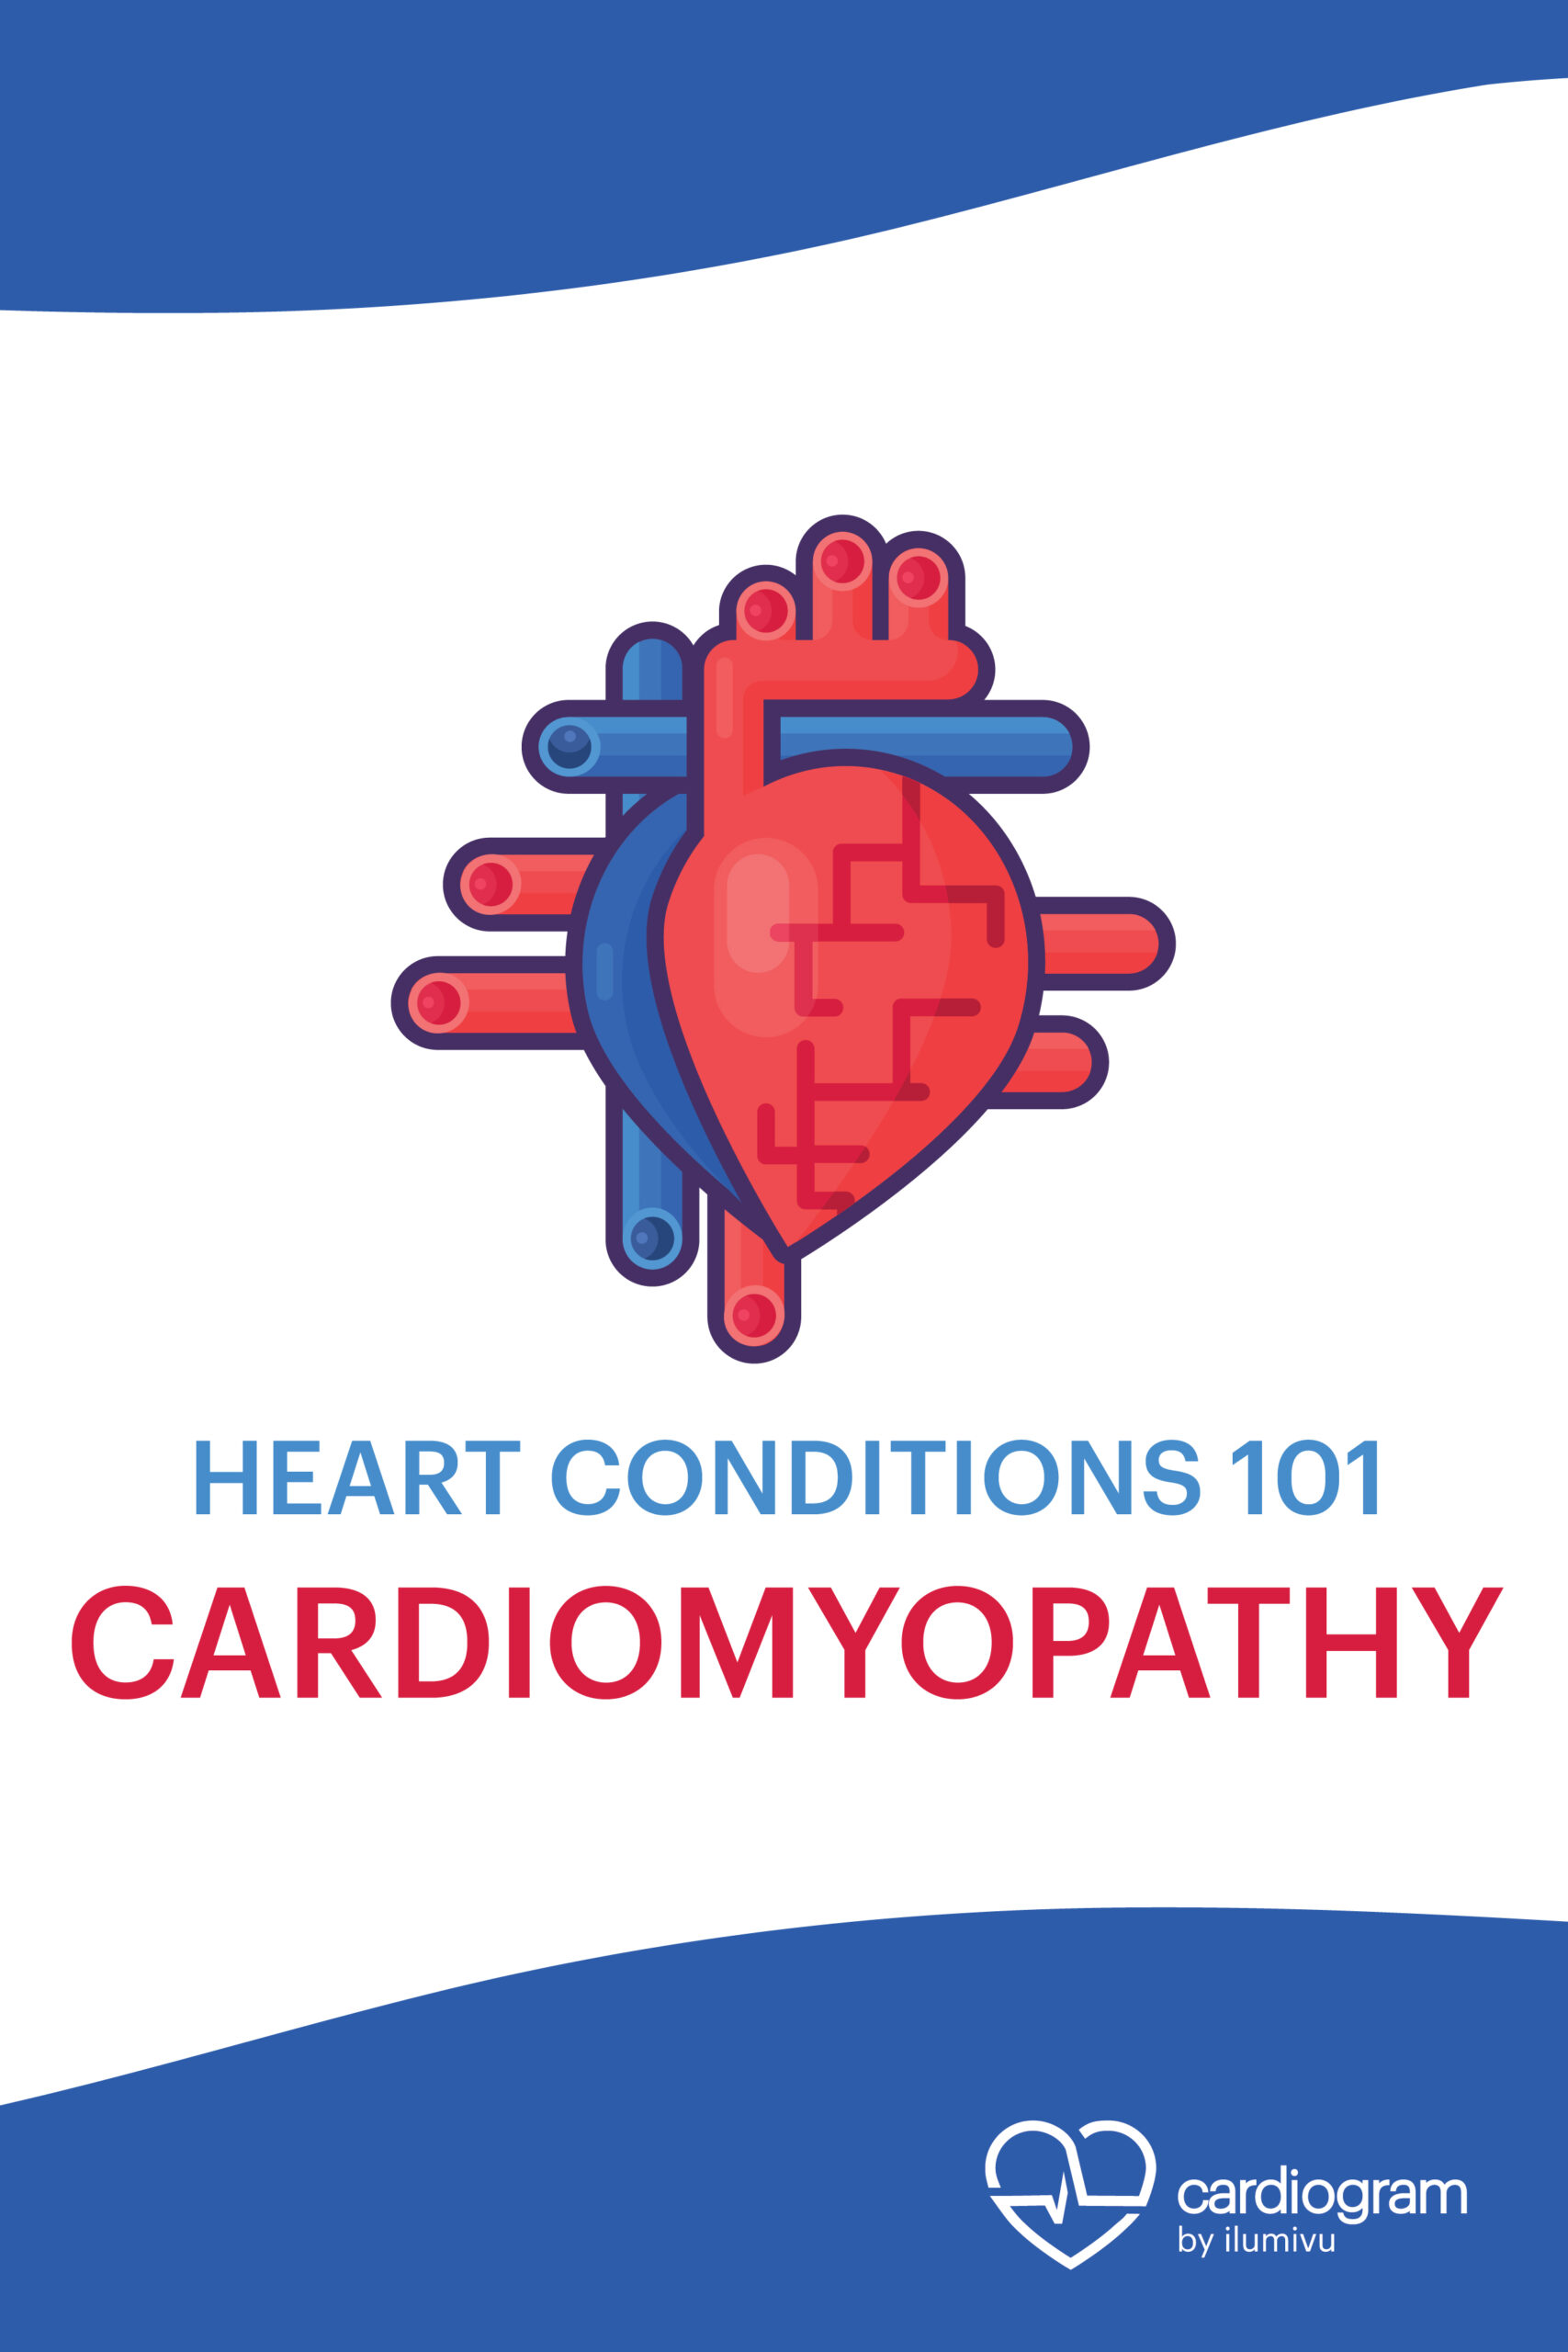 Heart Conditions 101: Cardiomyopathy